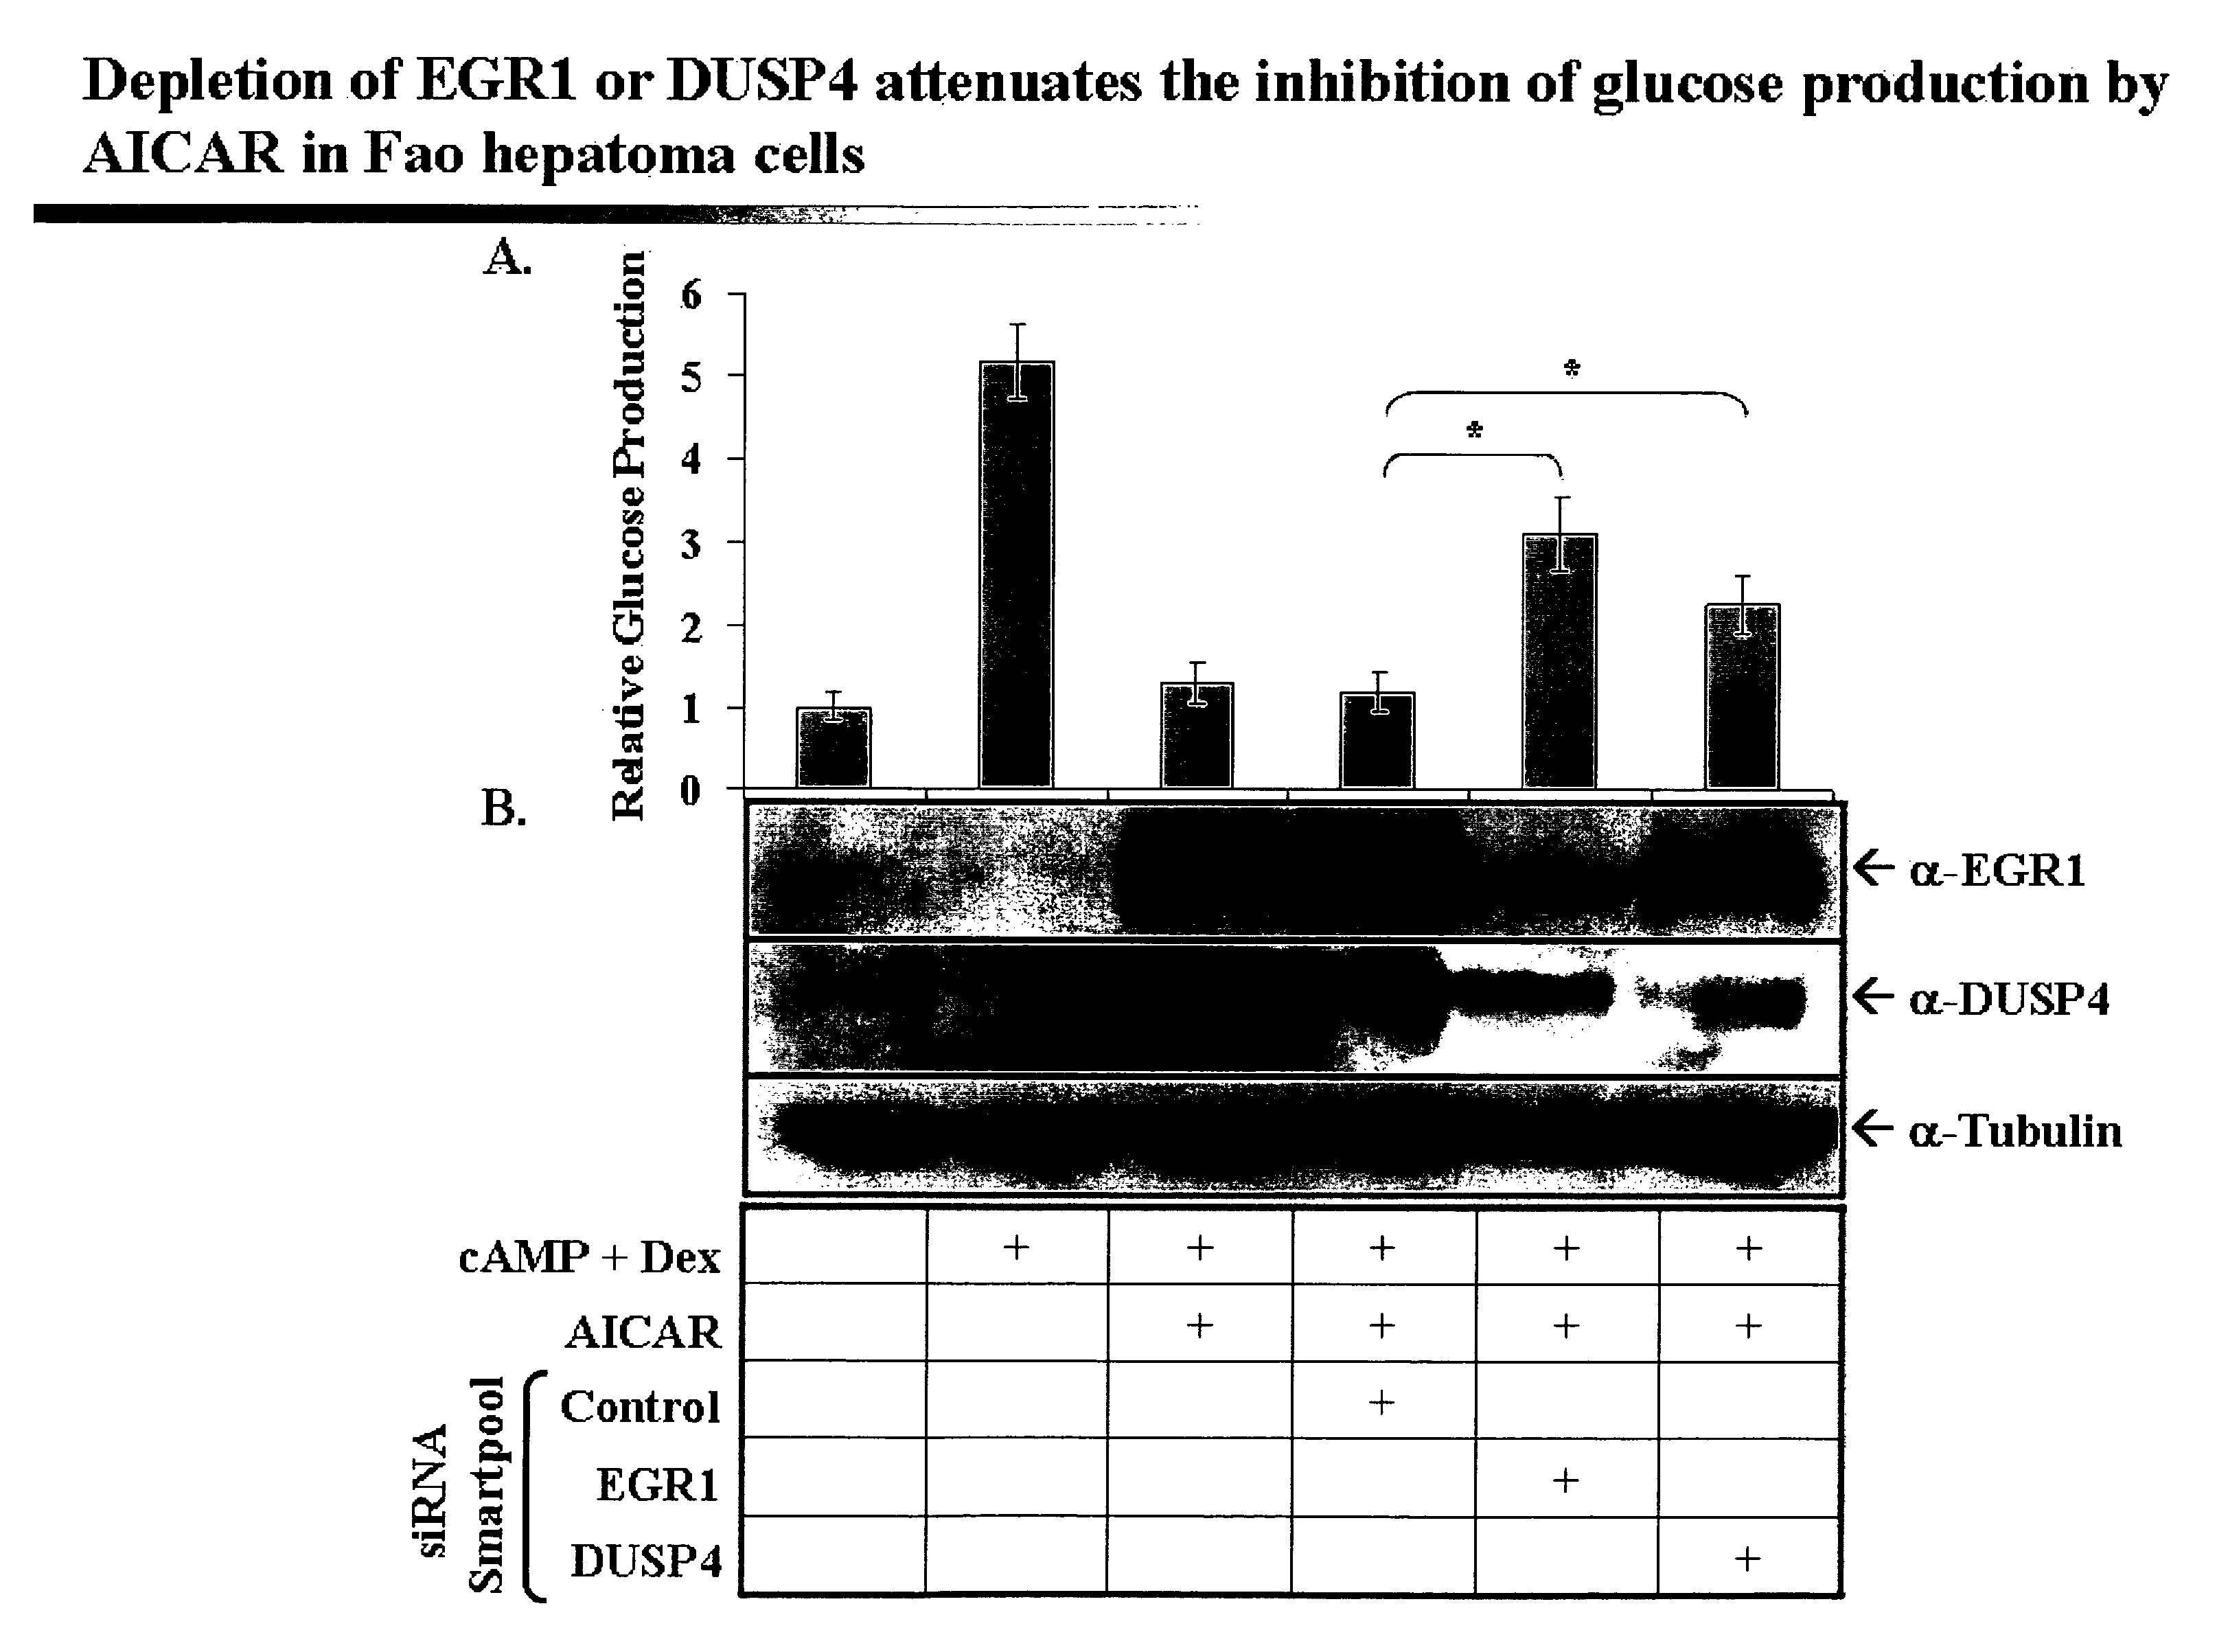 Modulators of gluconeogenesis